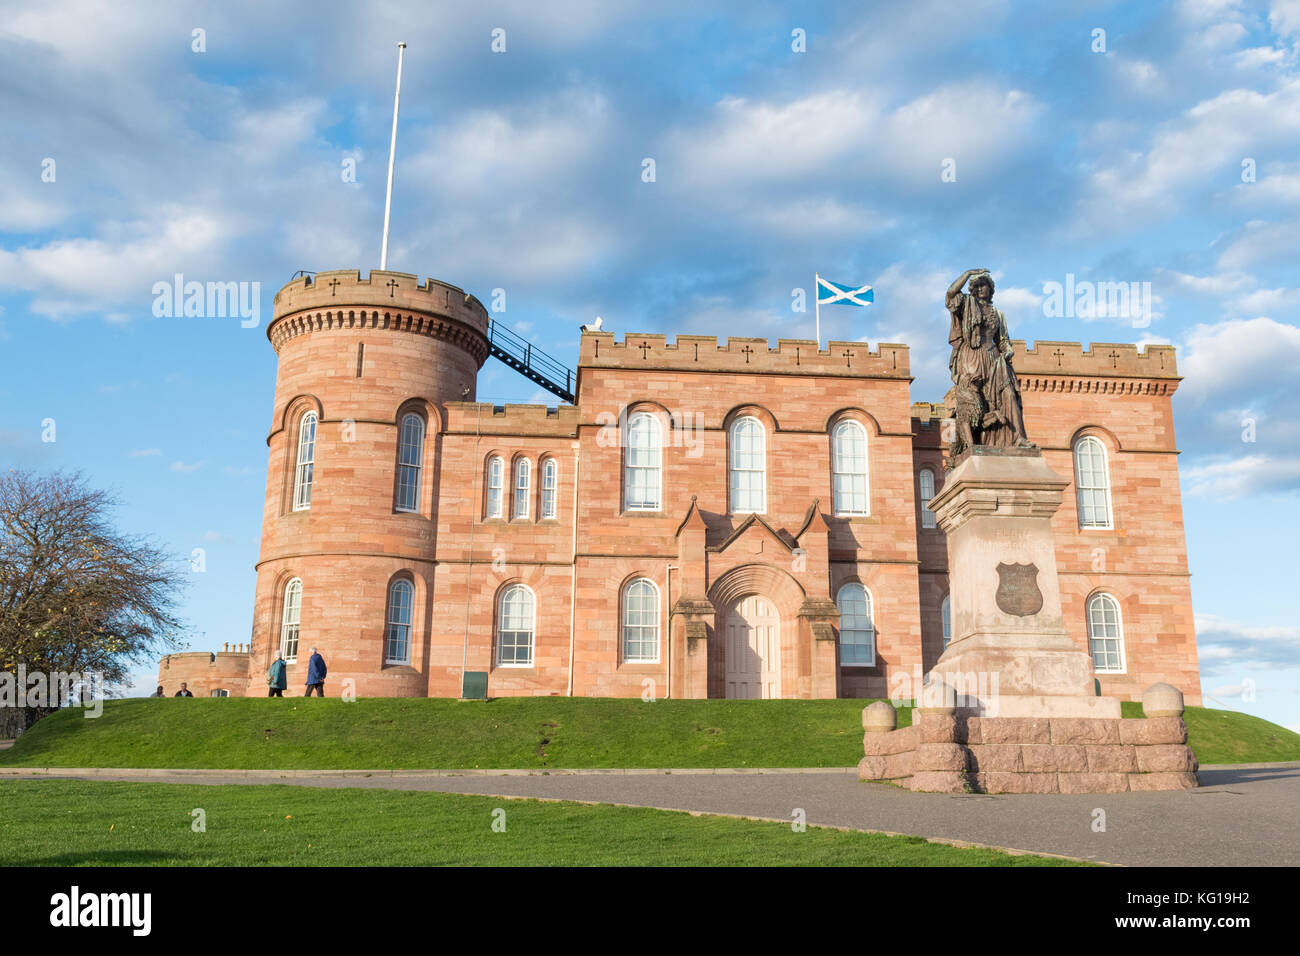 Le Château d'Inverness et statue de Flora Macdonald, Inverness, Scotland, UK Banque D'Images